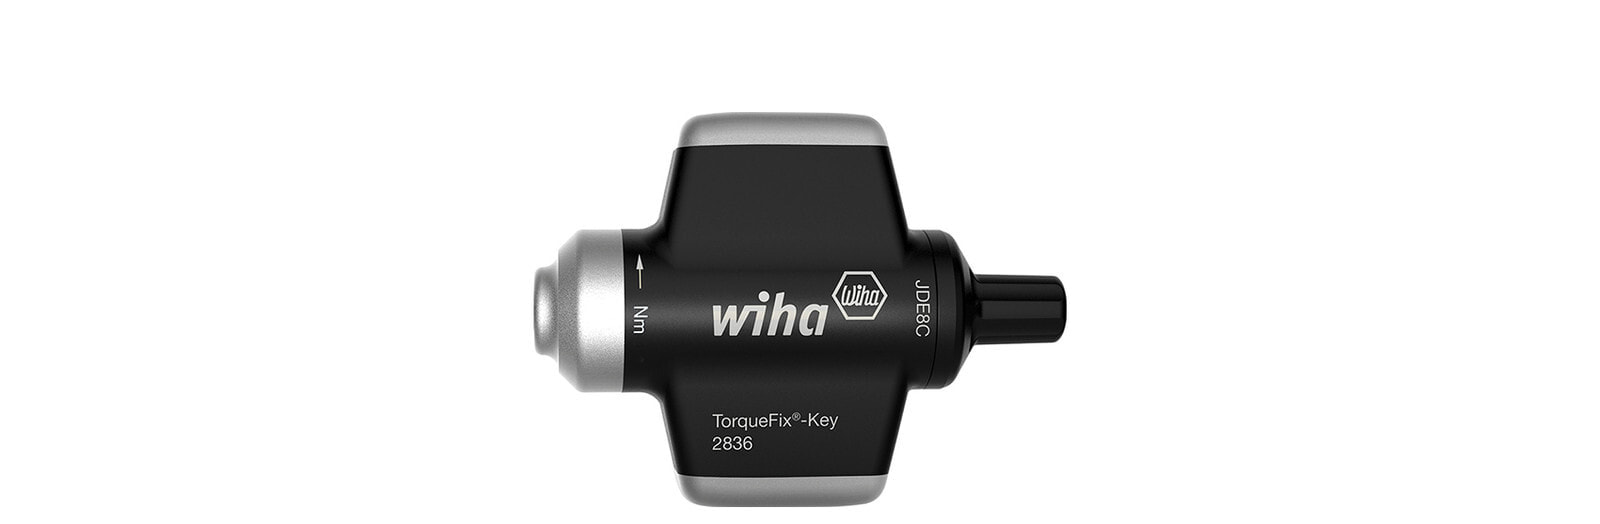 Динамометрическая отвертка TorqueFix-Key Wiha 38618 0,9 Нм